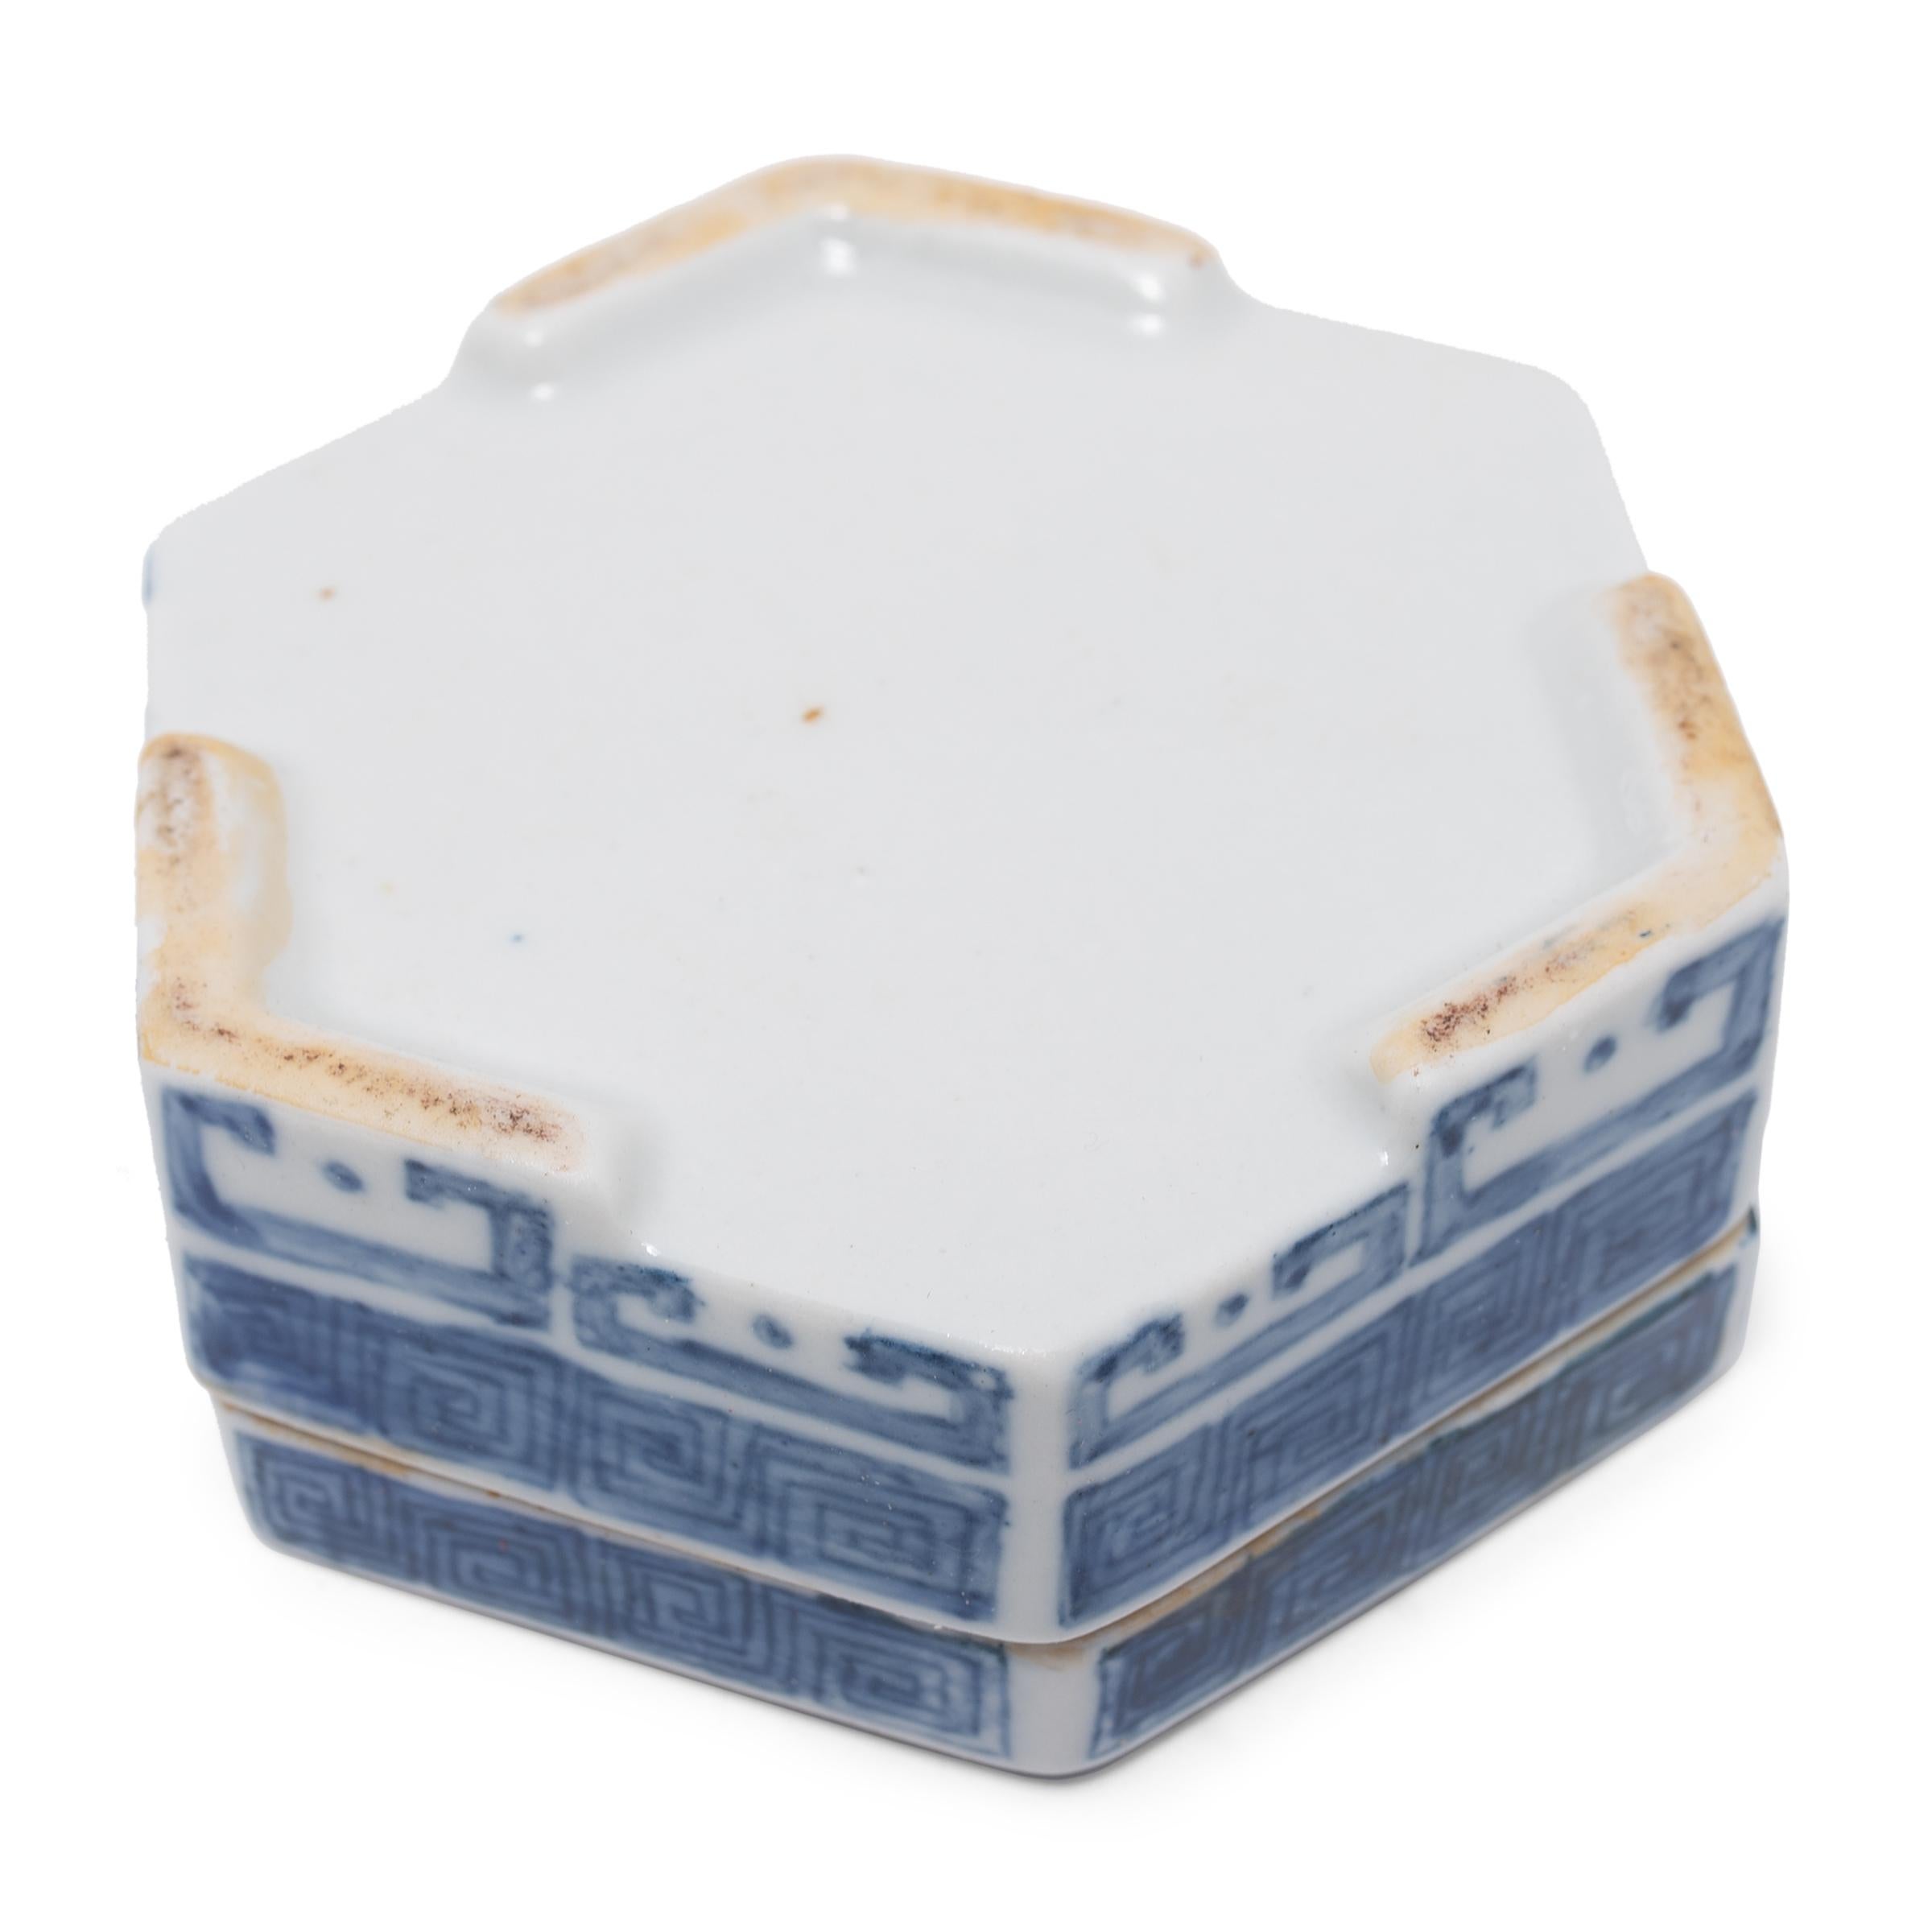 20th Century Chinese Blue and White Hexagonal Box